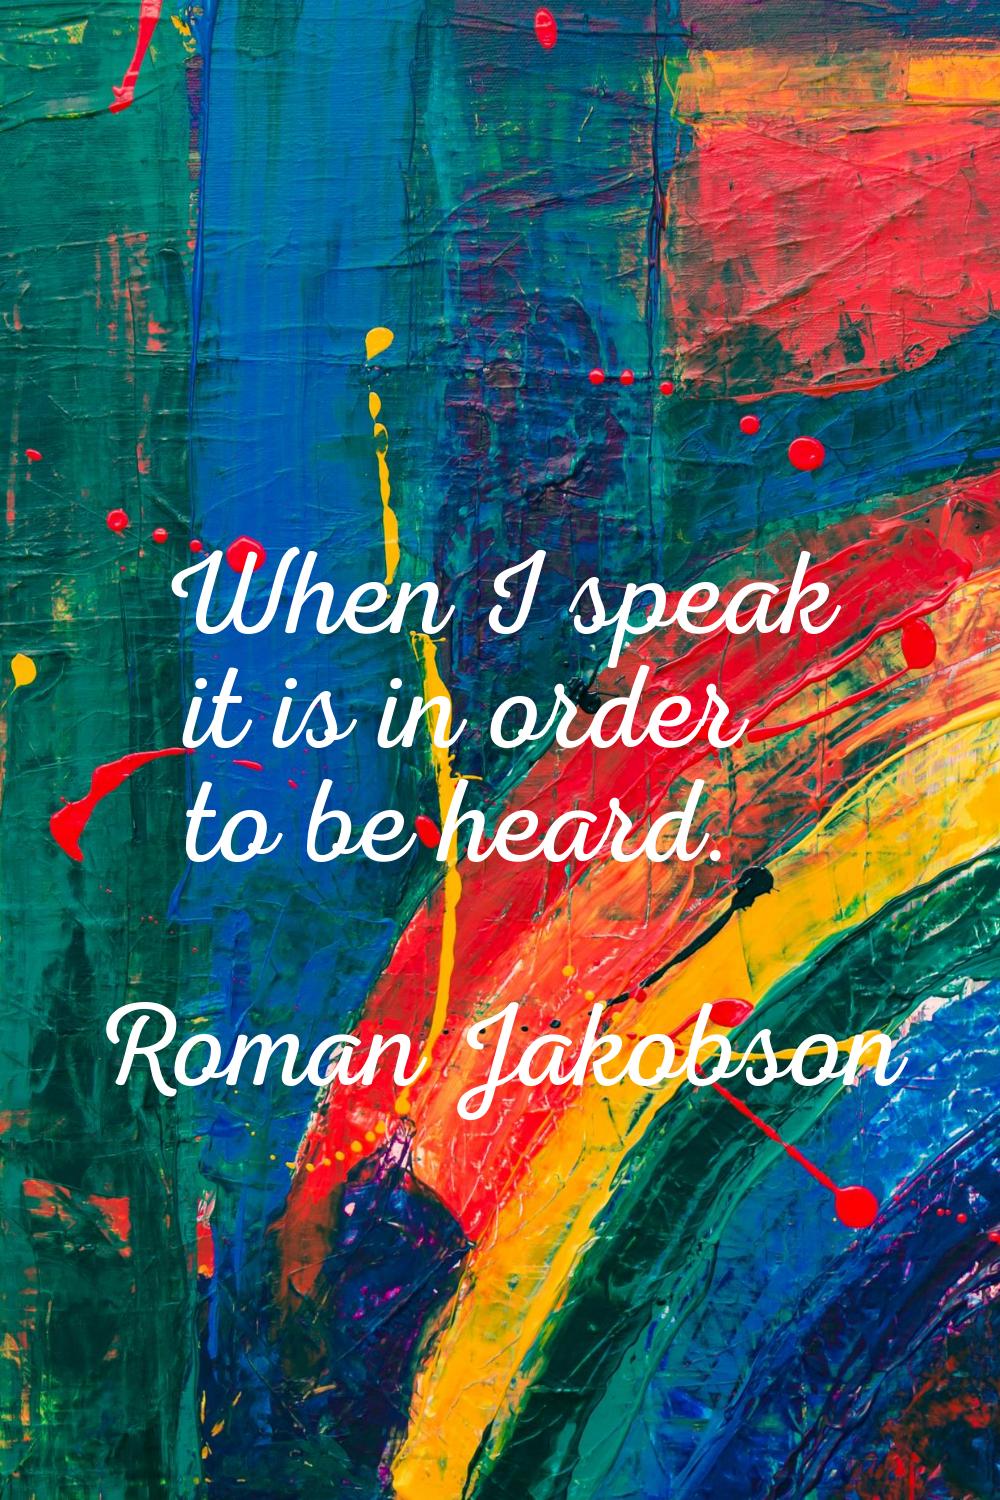 When I speak it is in order to be heard.